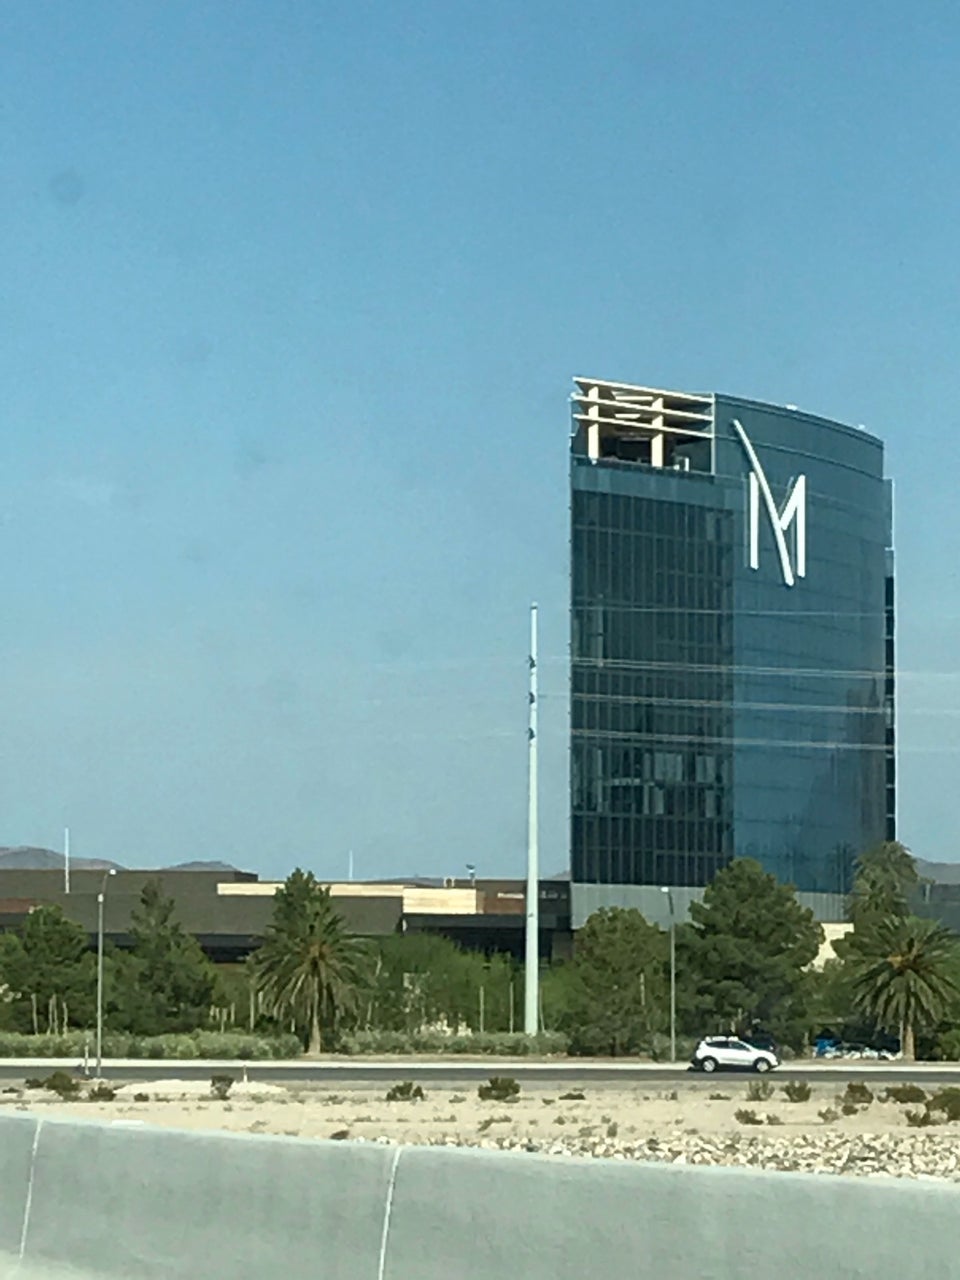 Photo of M Resort Spa Casino